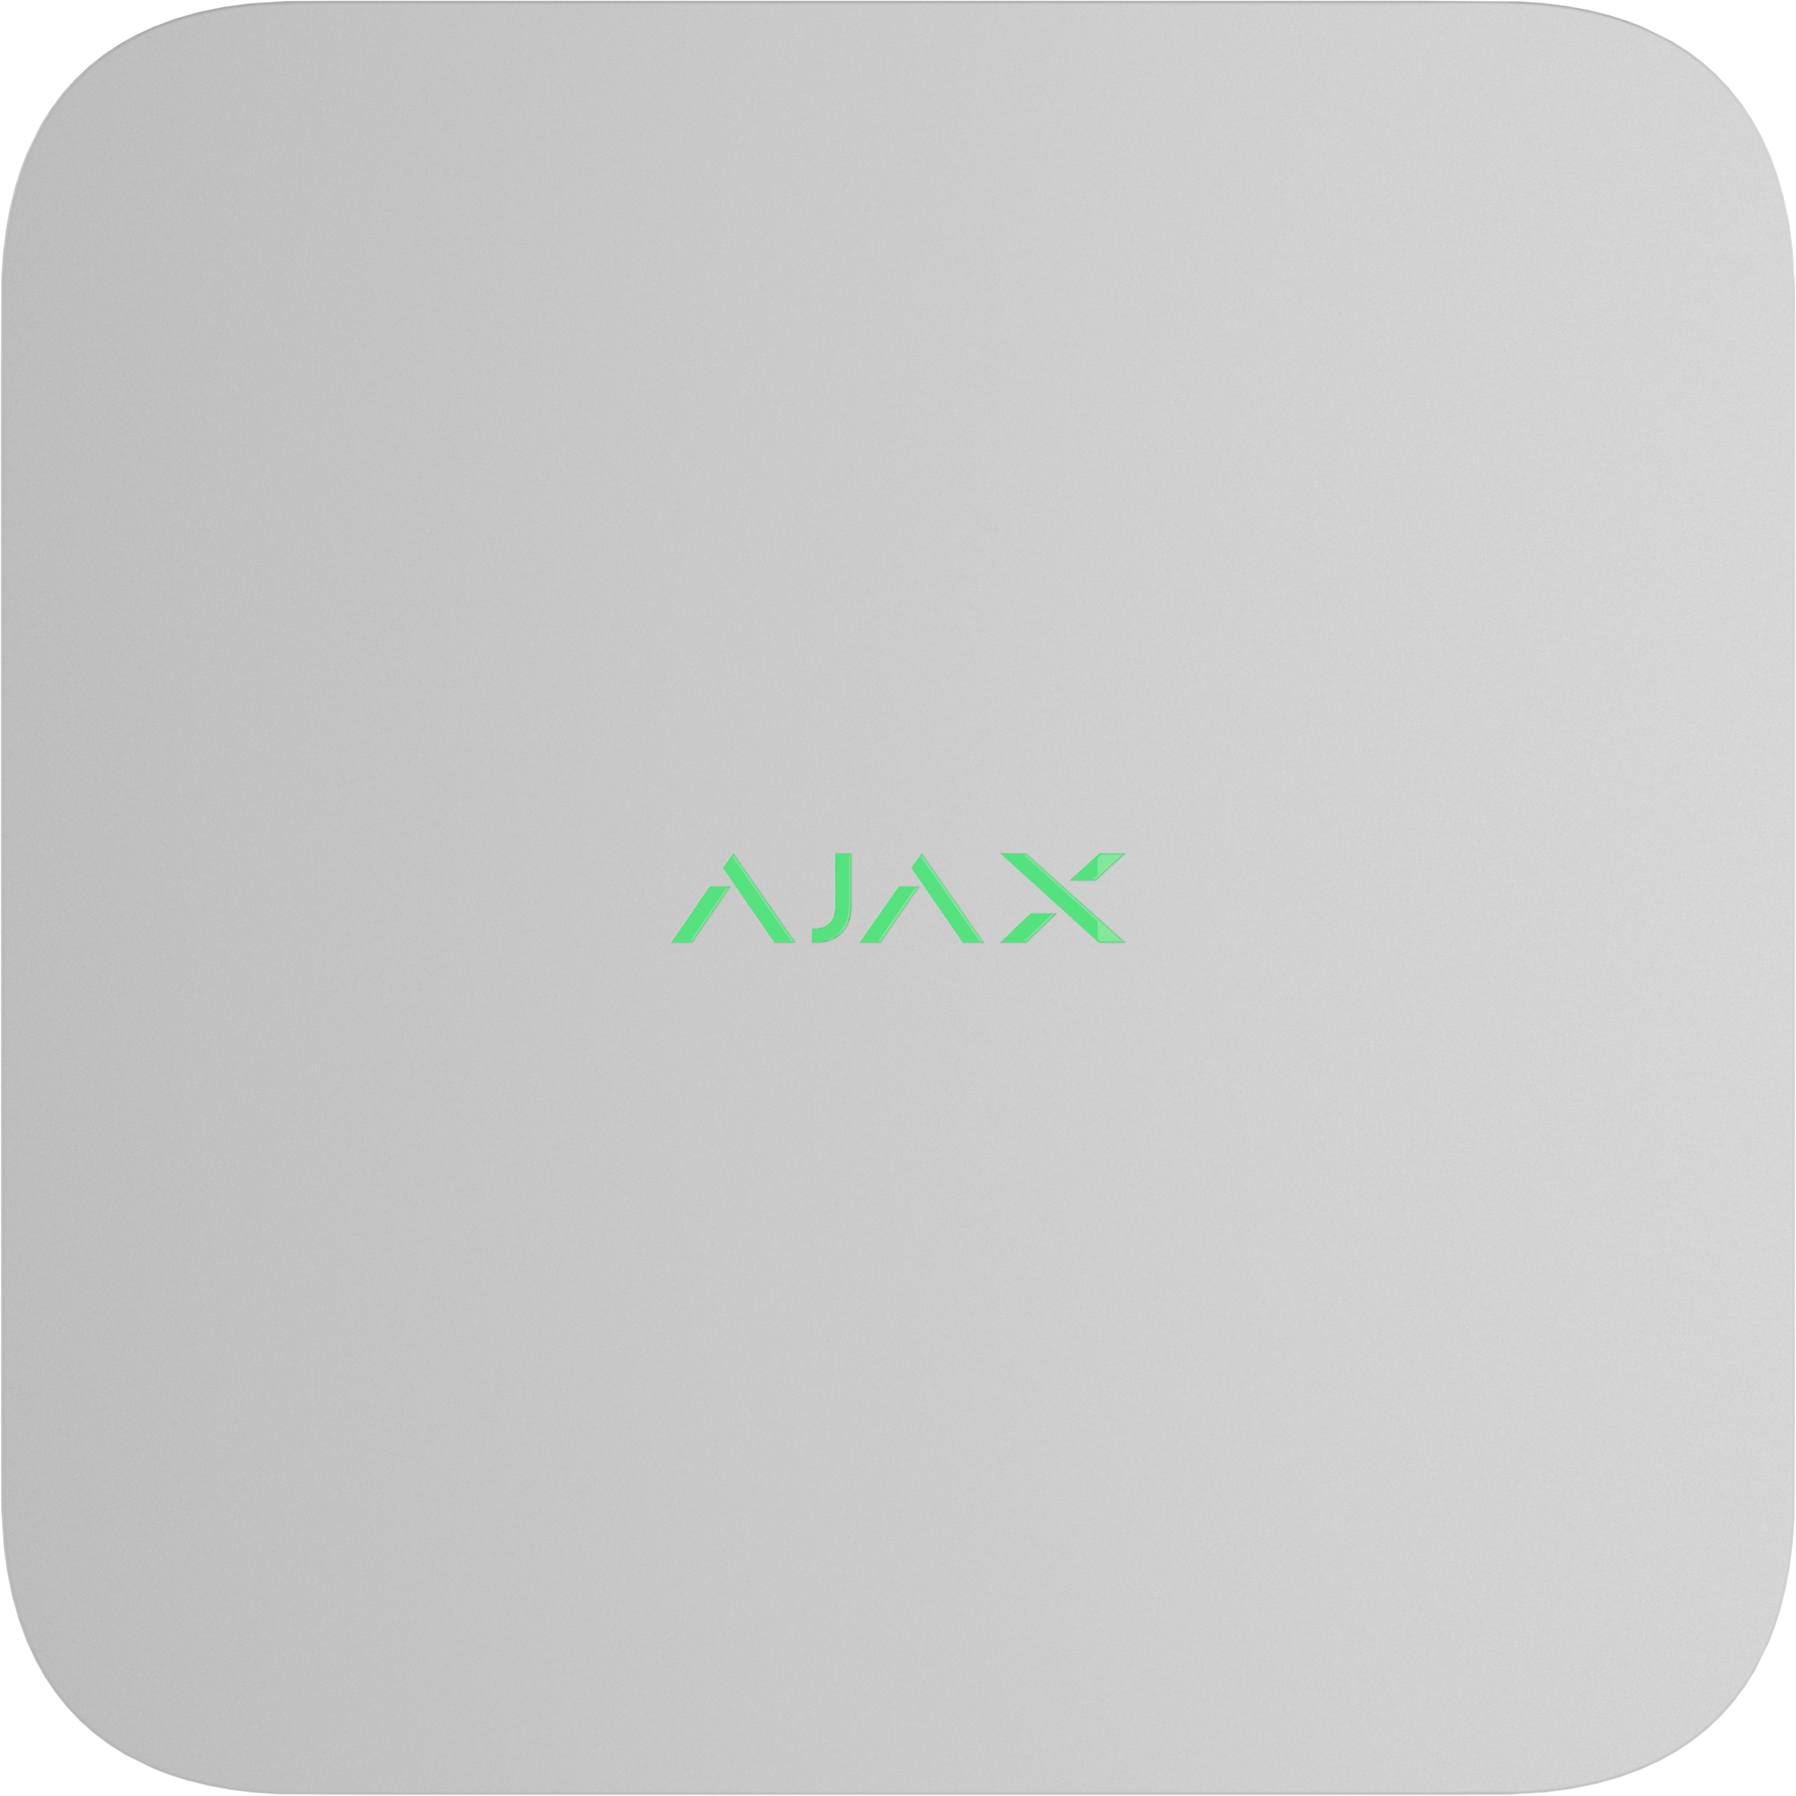 Сетевой видеорегистратор Ajax NVR, 8 каналов, jeweller, белый